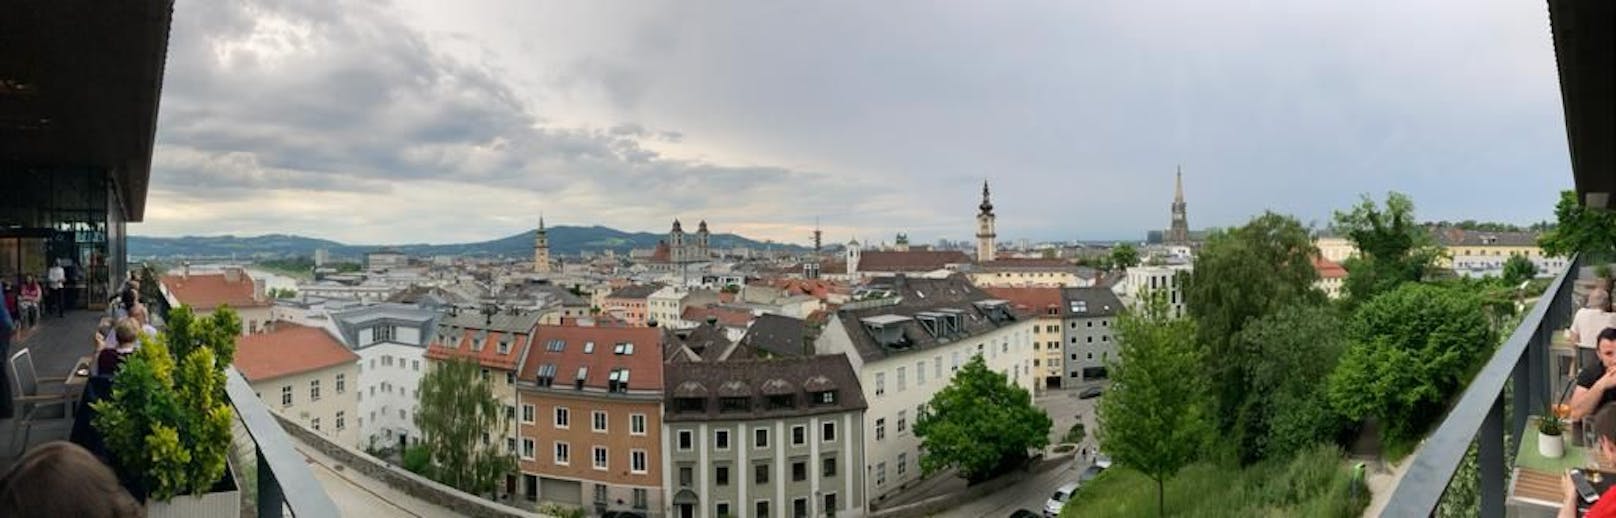 Eine unverwechselbare Aussicht auf die oberösterreichische Hauptstadt Linz.